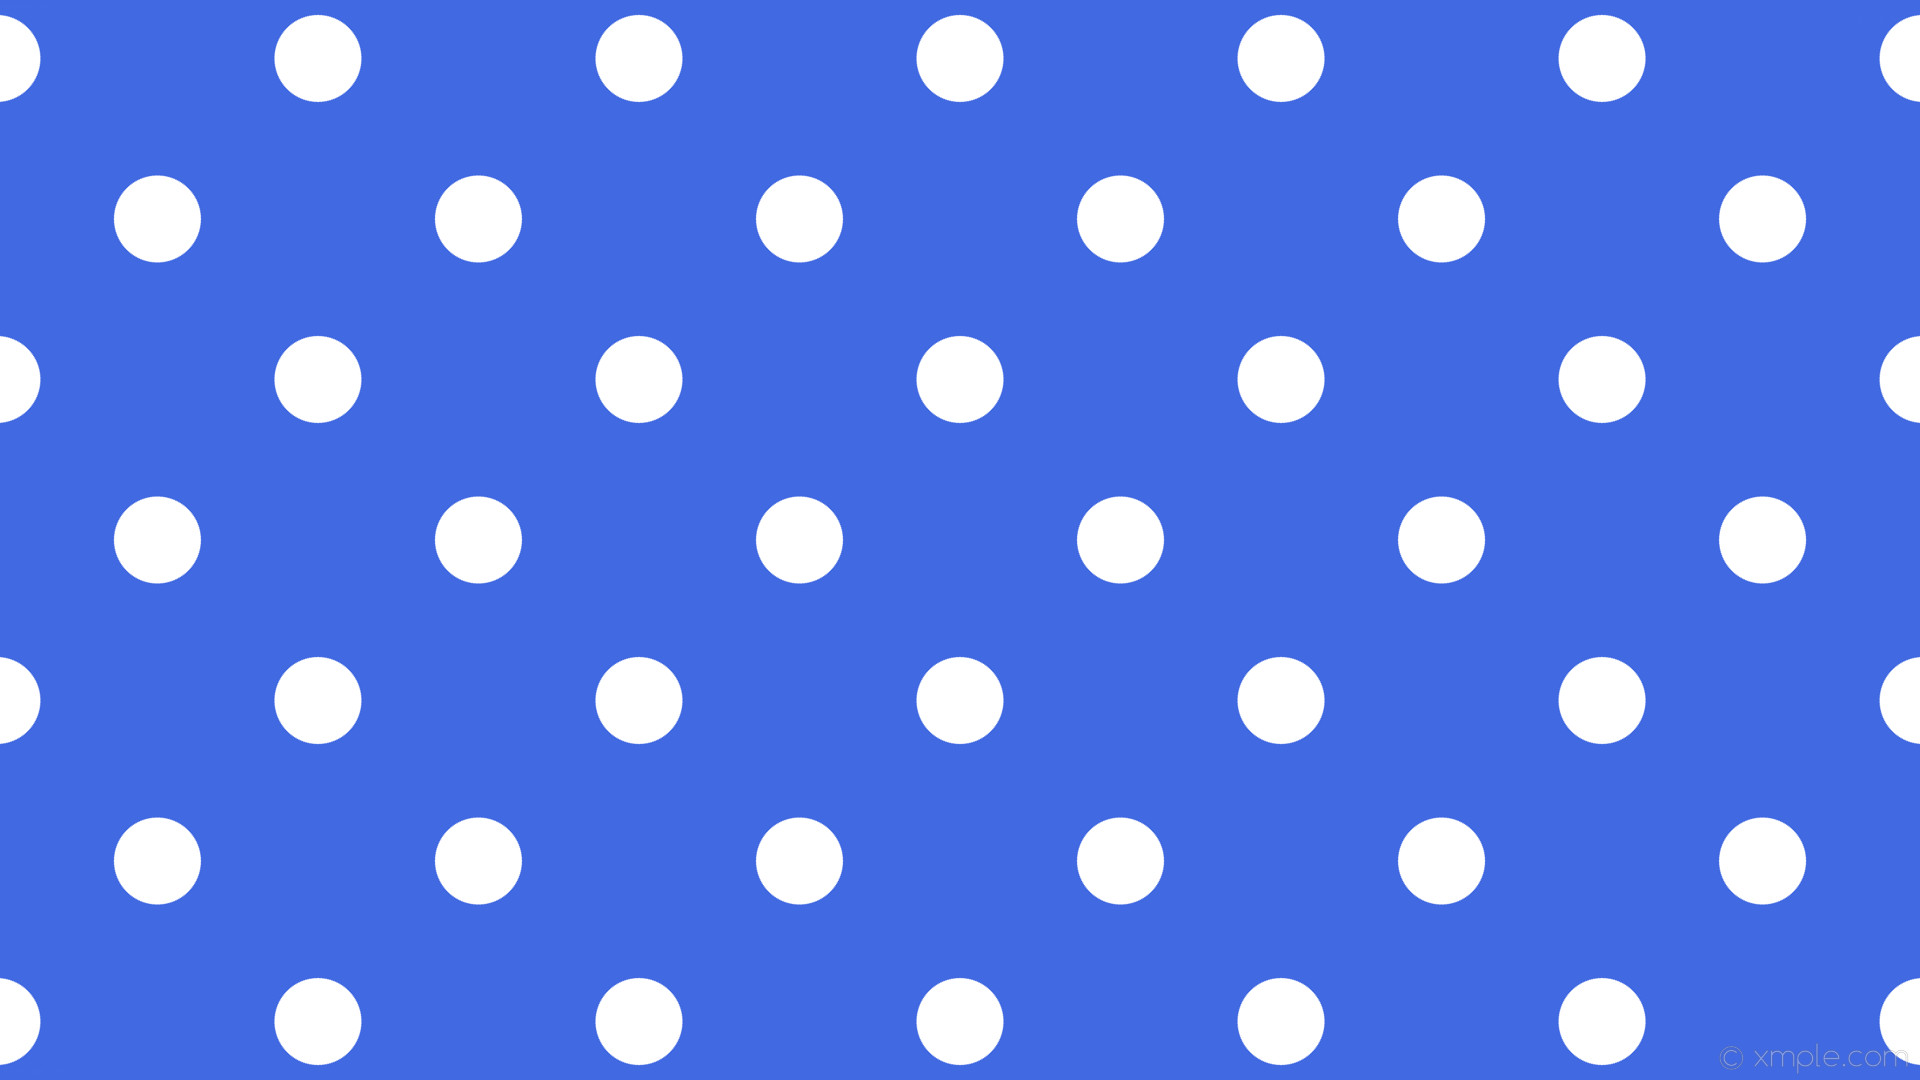 1920x1080 wallpaper dots polka white spots blue royal blue #4169e1 #ffffff 315Â° 87px  227px